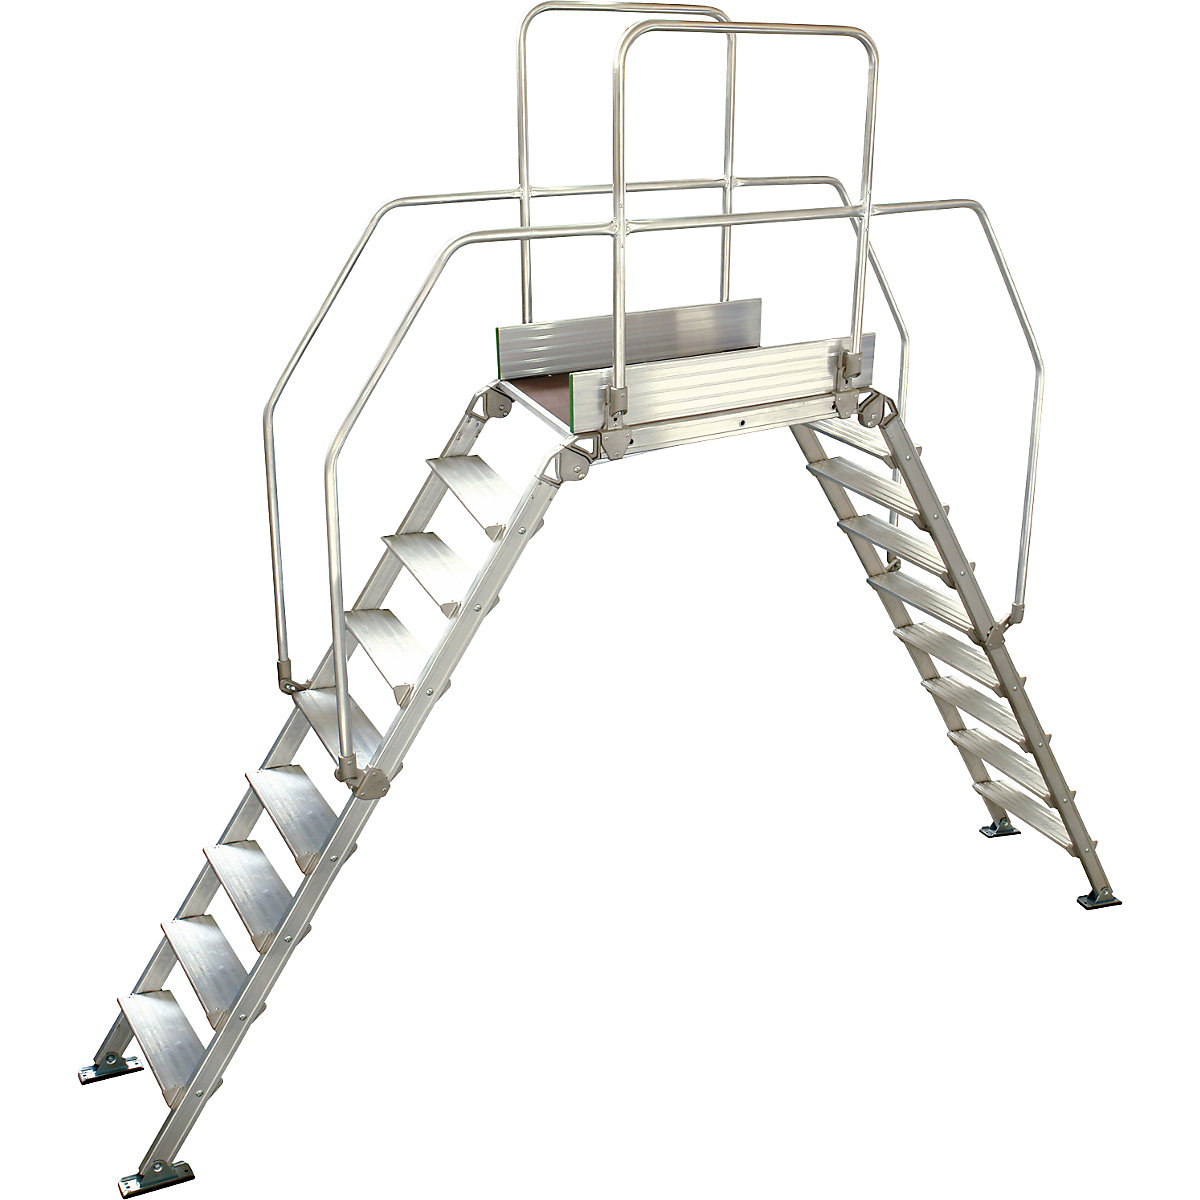 Aluminium ladderbrug, totale belasting 200 kg, 9 treden, platform 900 x 530 mm-12